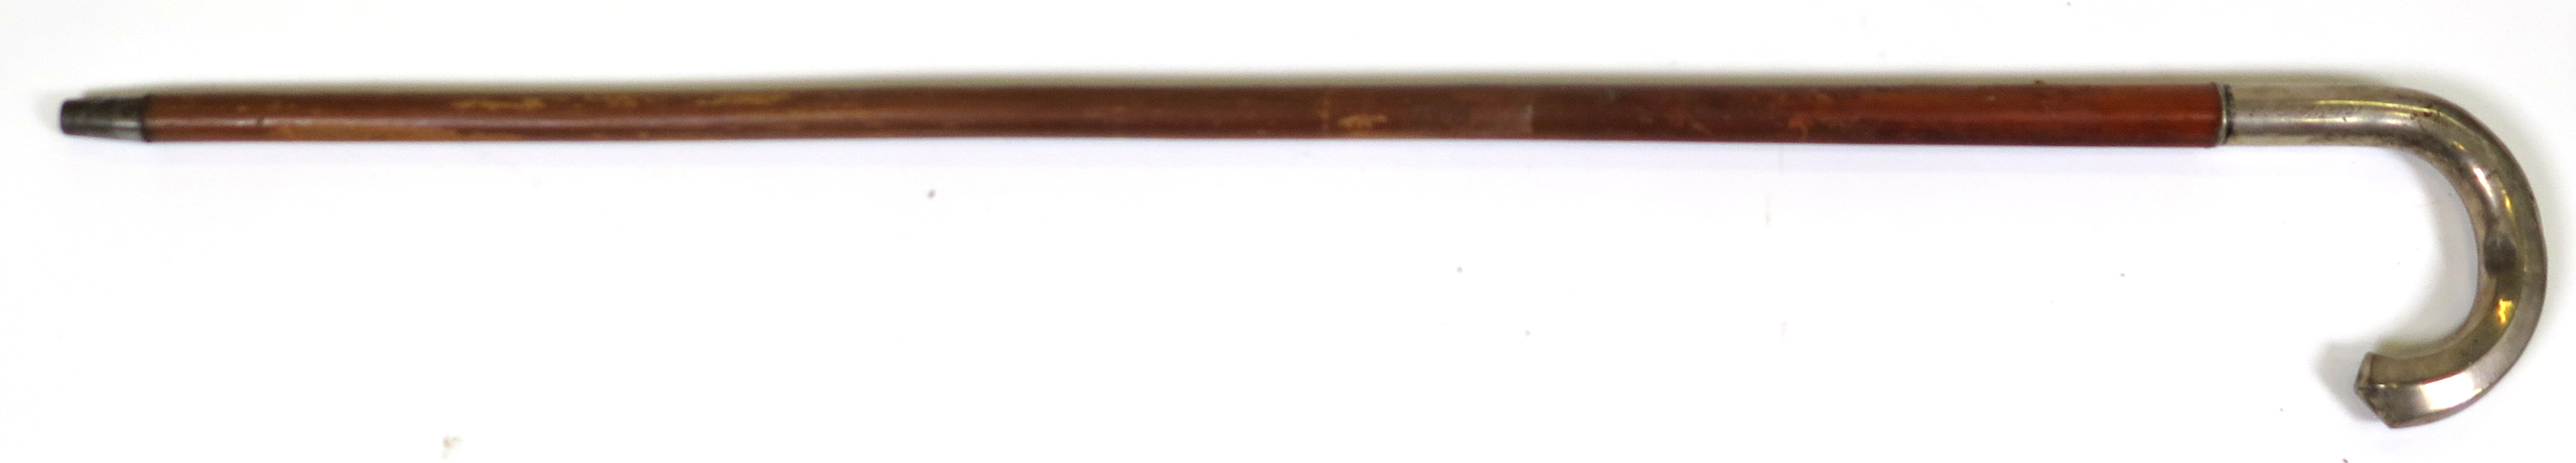 Käpp med silverkrycka, 1900-talets 1 hälft, doppsko i järn, l 87 cm, gravyr_25628a_8dafed2e477ec51_lg.jpeg